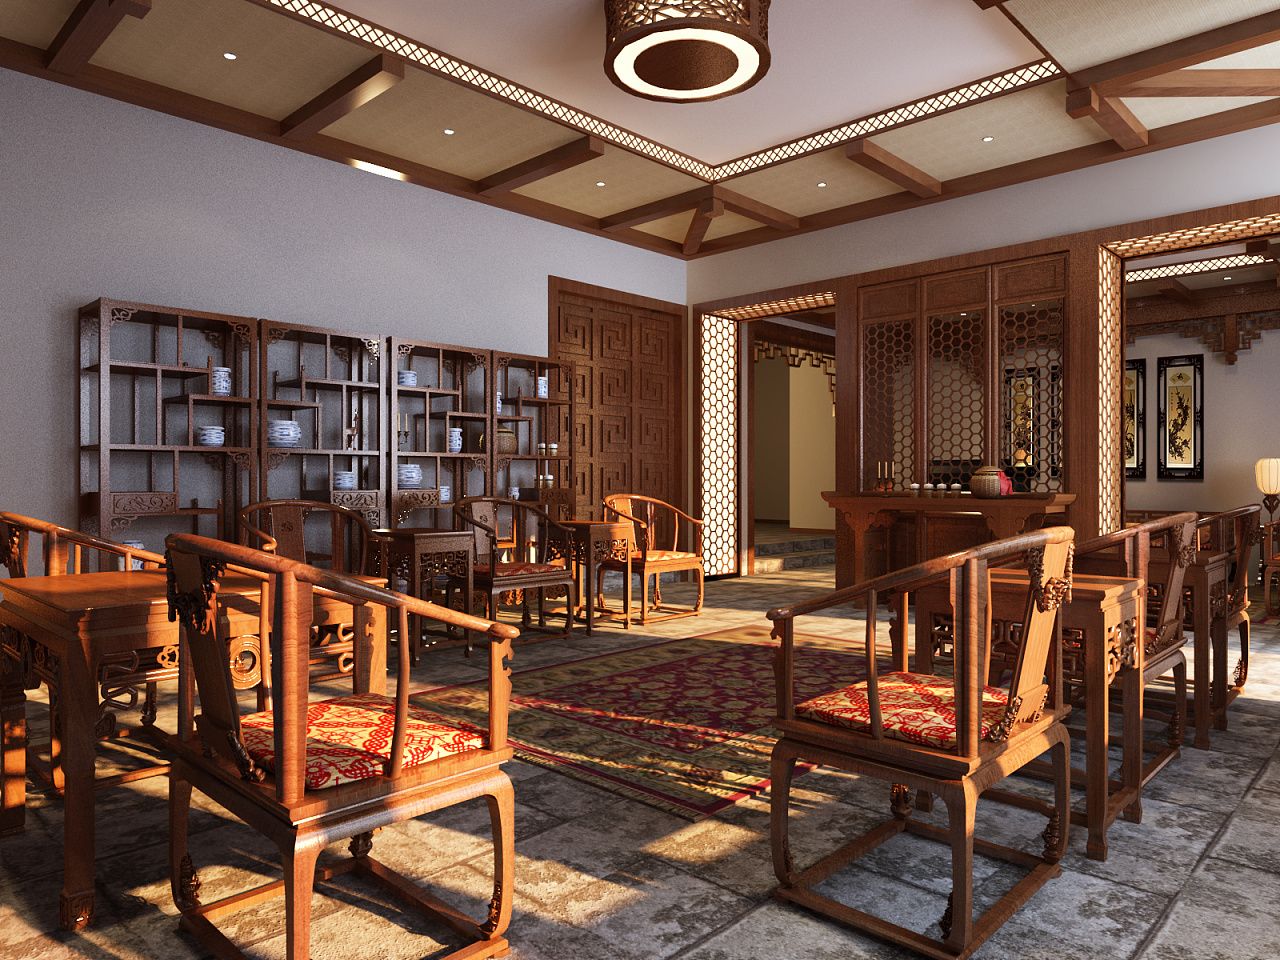 中式客厅古典红木家具装修效果图欣赏 – 设计本装修效果图